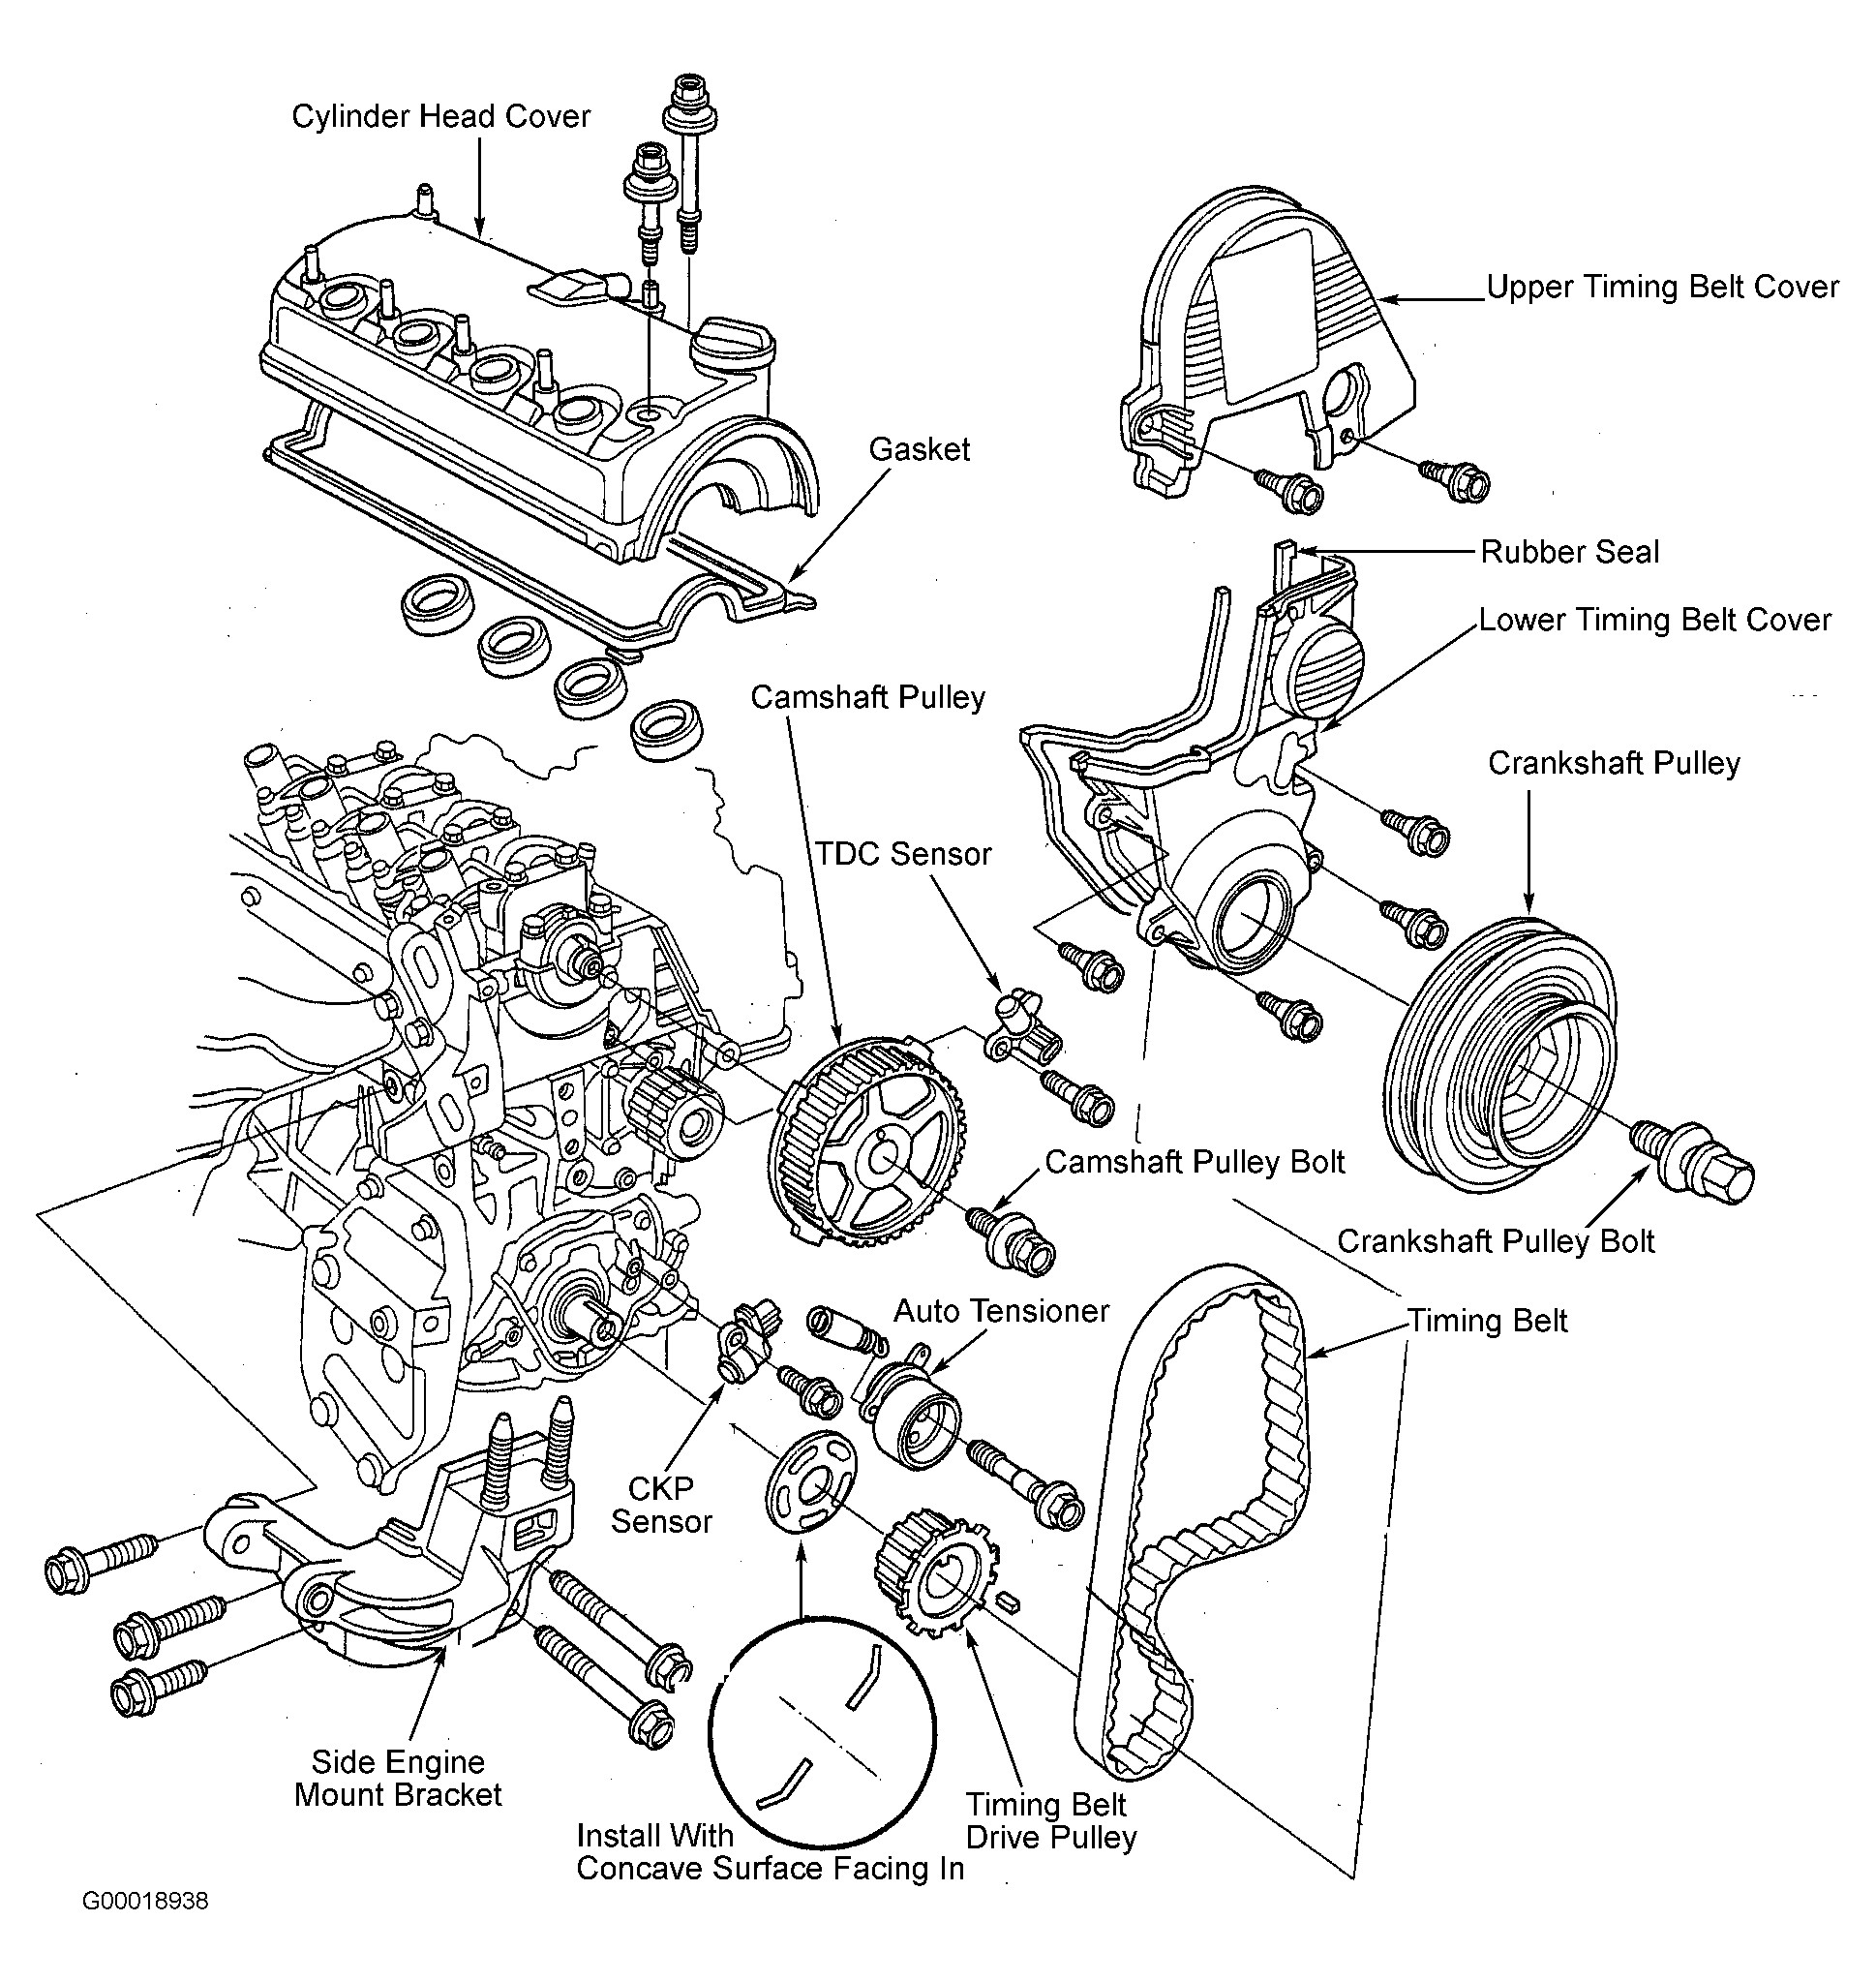 Brake Parts Diagram Honda Civic Parts Diagram Wonderful Likeness Serpentine and Timing Of Brake Parts Diagram